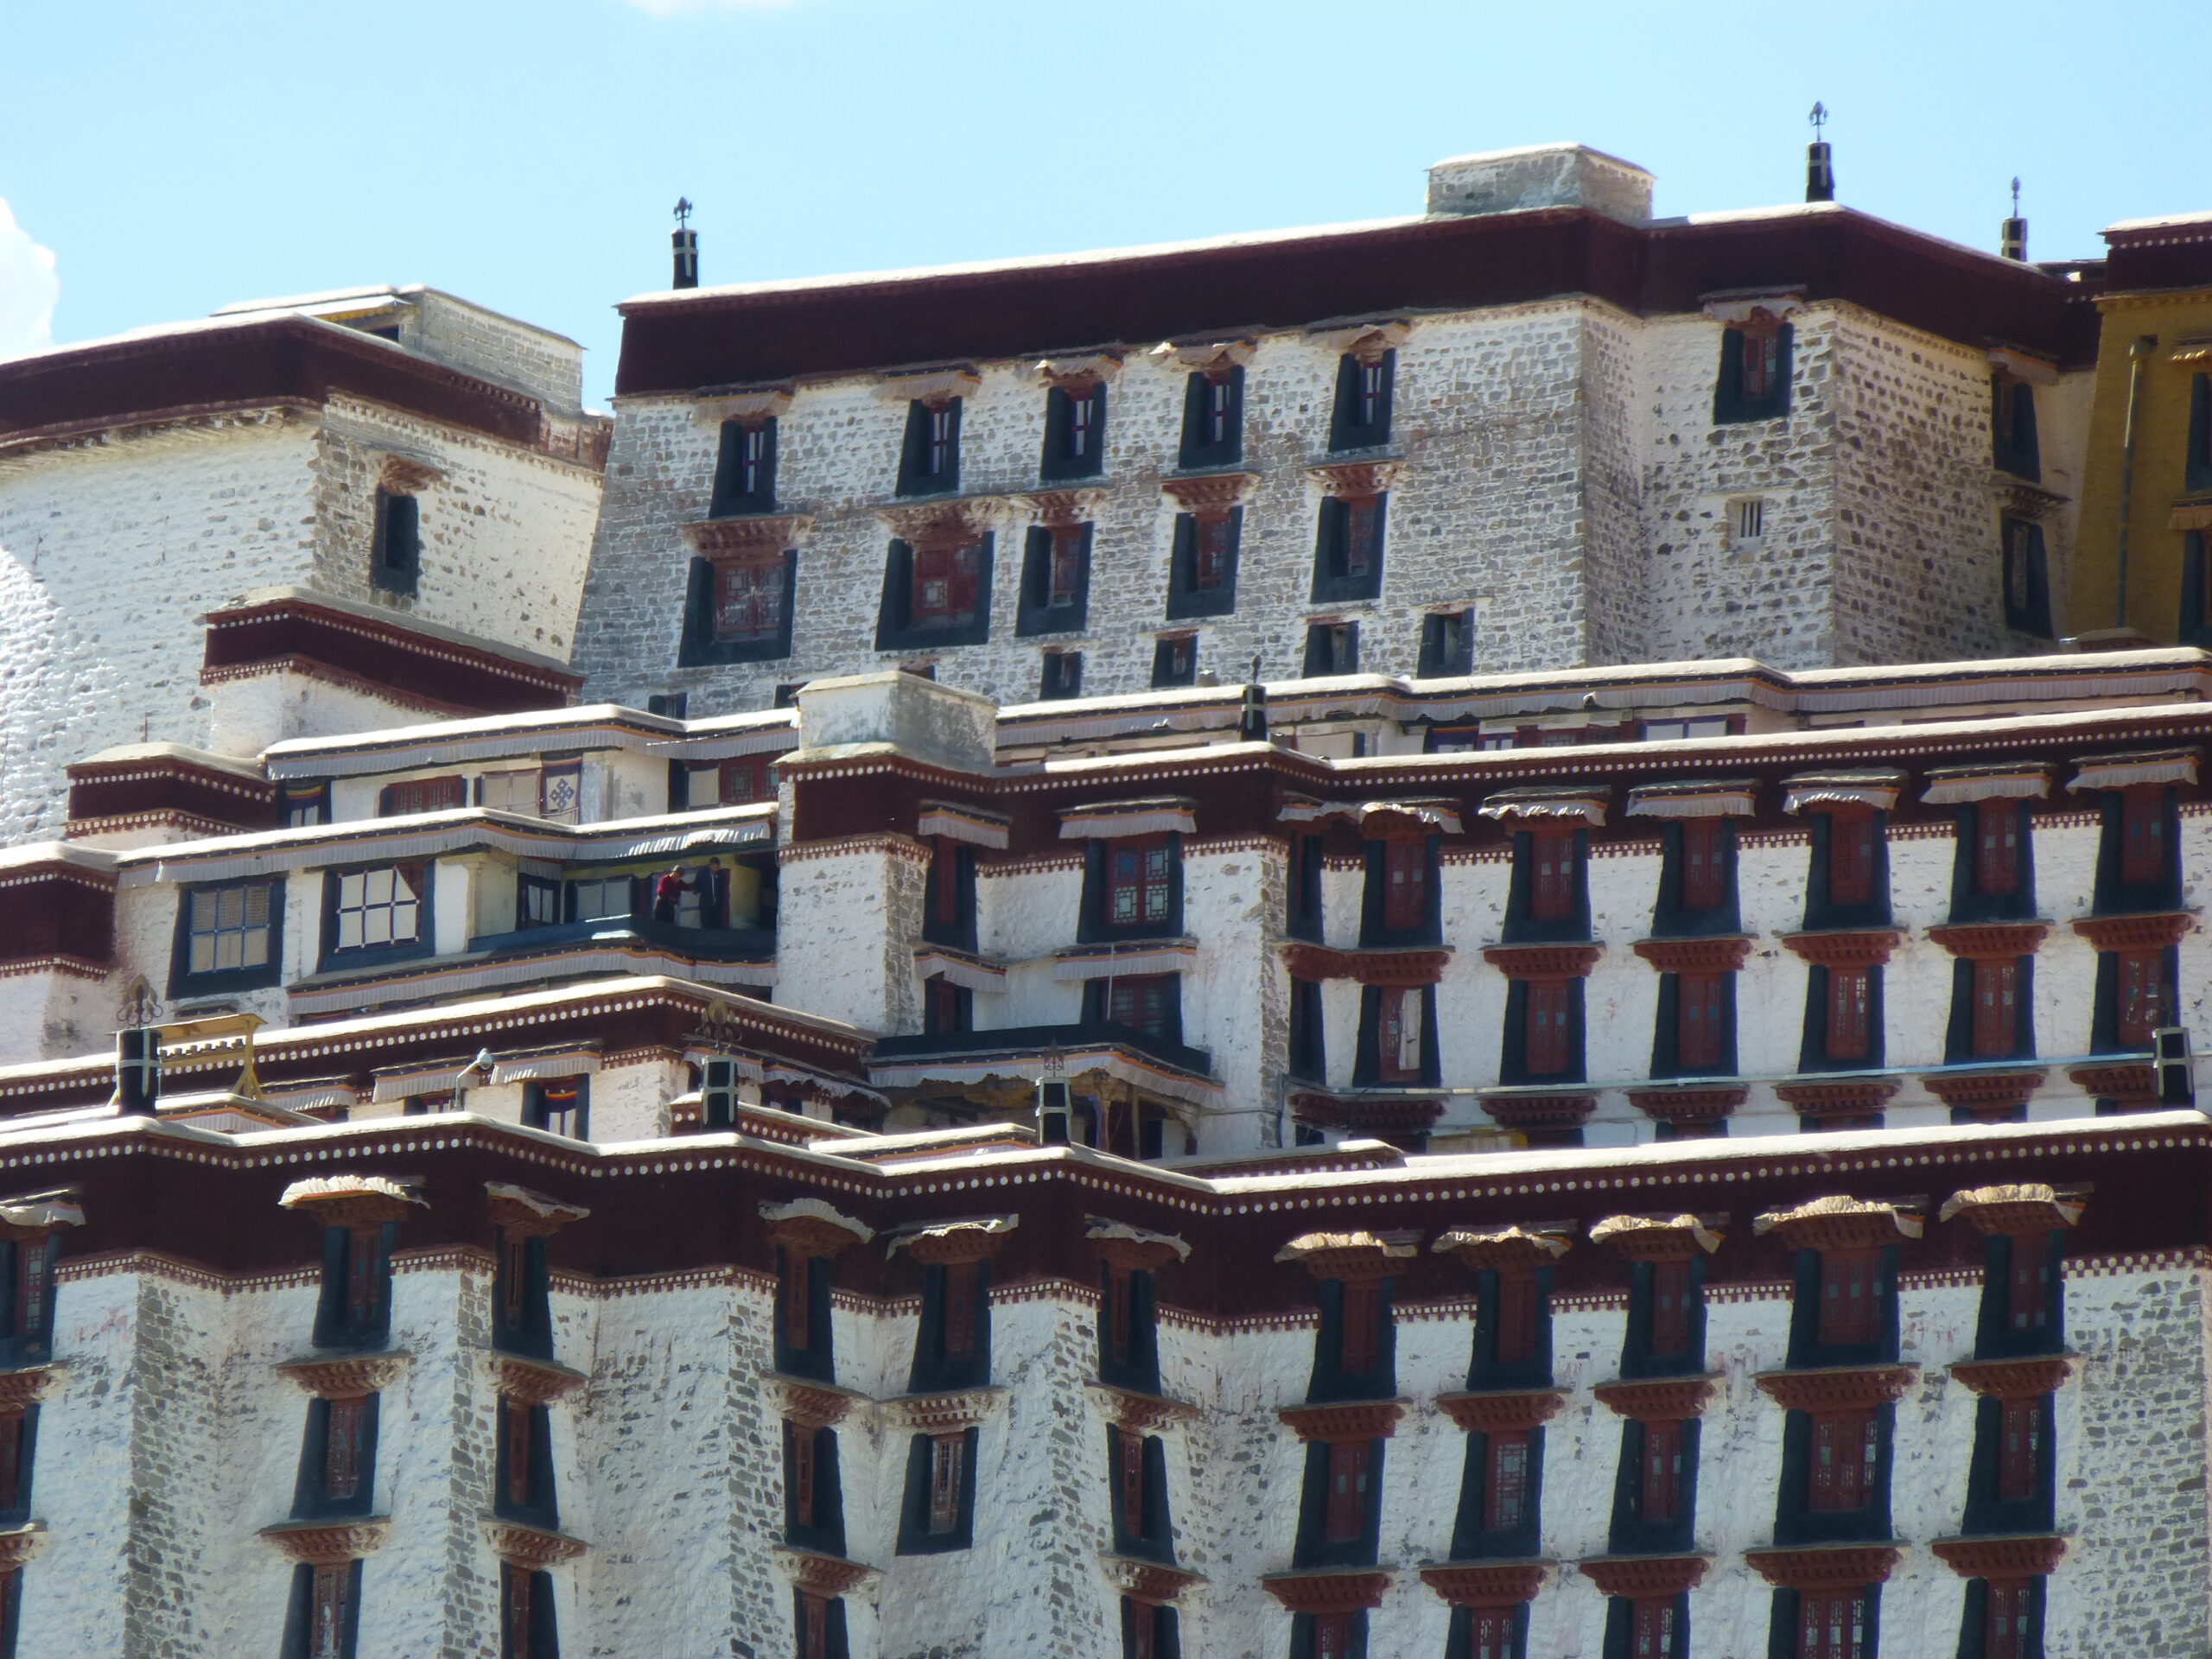 Lhasa.